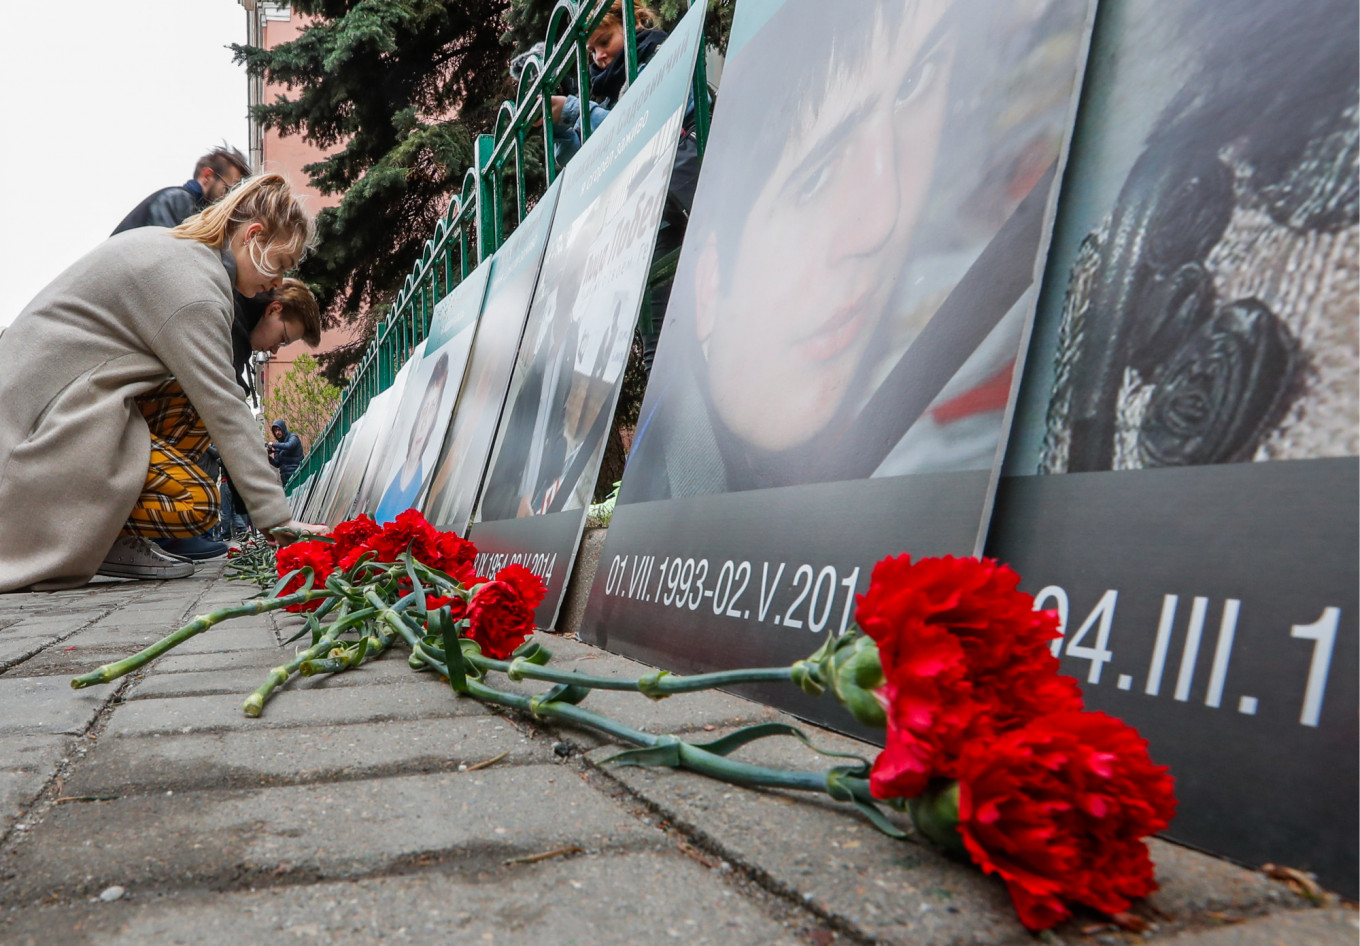 UN Mission Criticizes Probe into Odessa Deaths